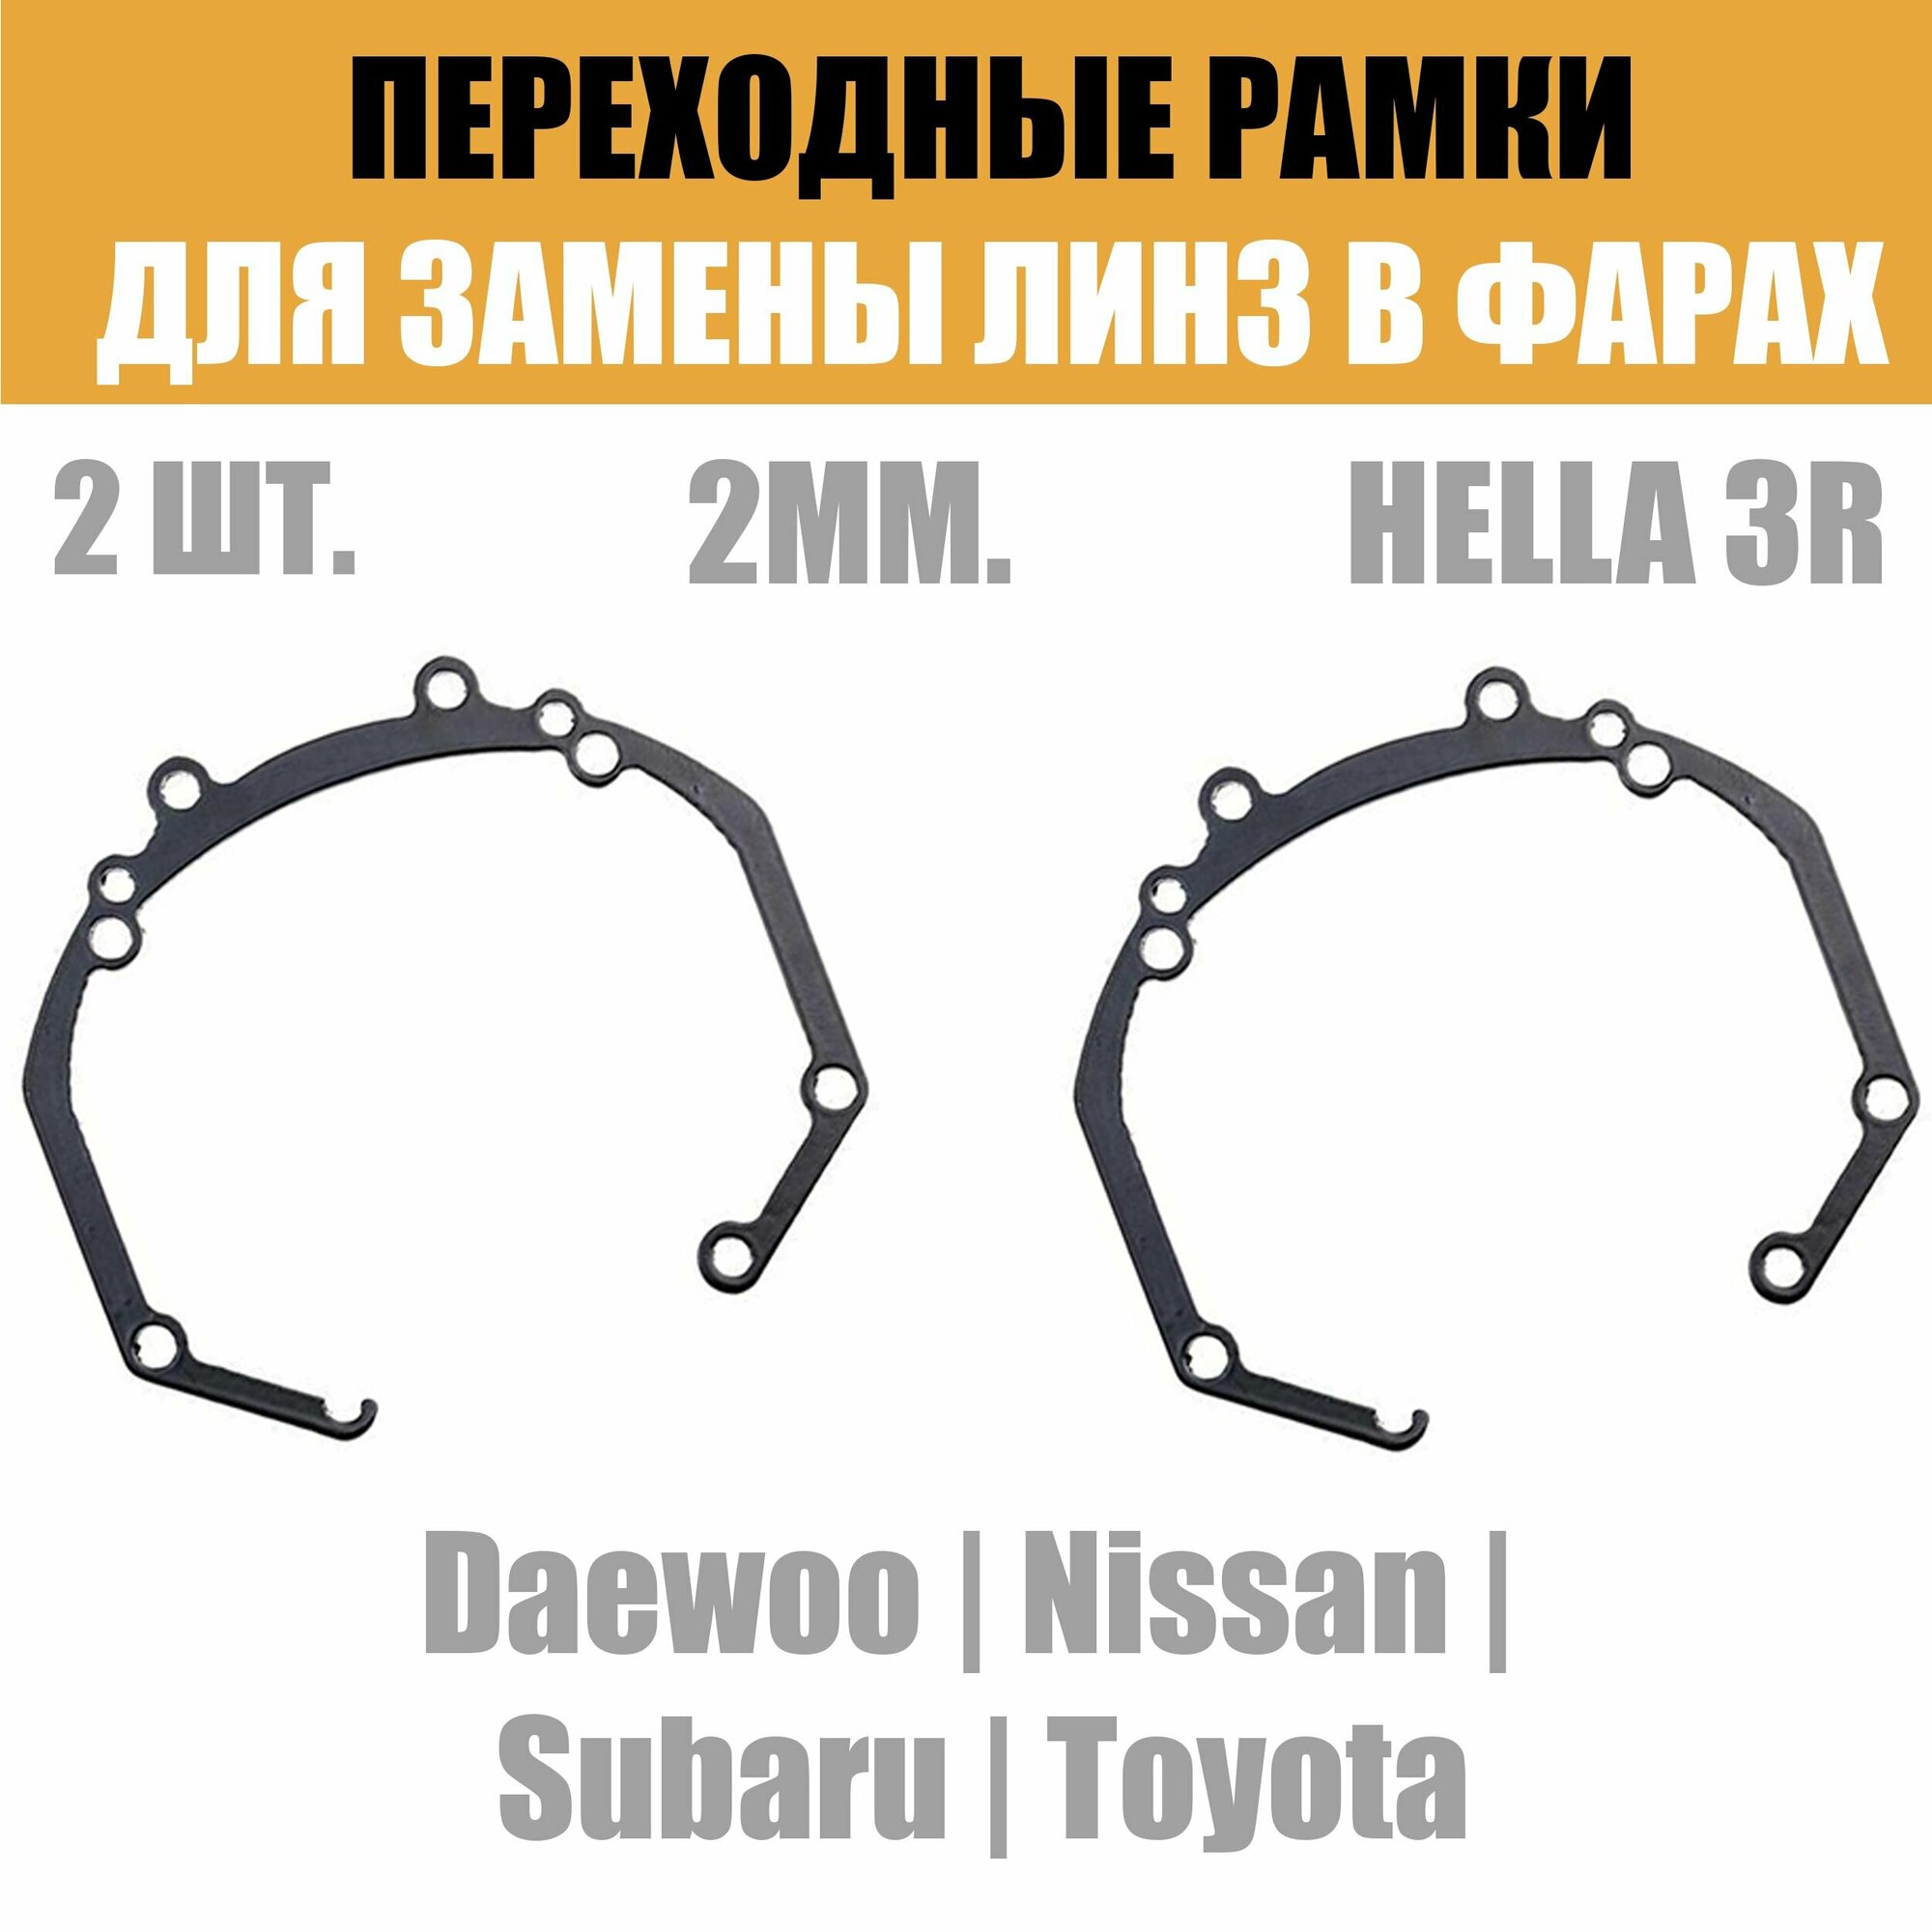 Переходные рамки для линз №36 на Nissan Subaru Toyota Daewoo под модуль Hella 3R/Hella 3 (Комплект 2шт)